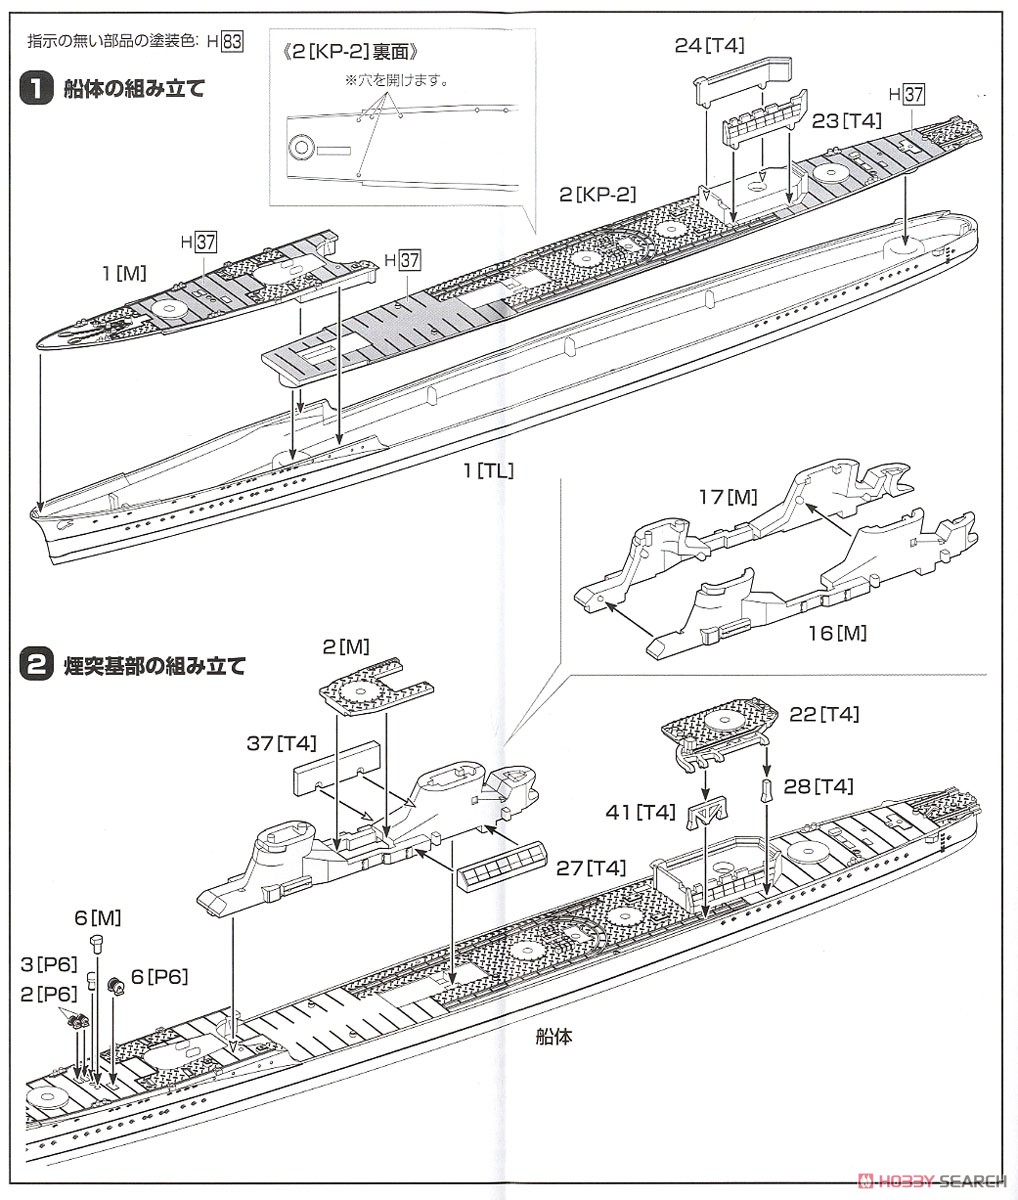 特型駆逐艦II型 狭霧 (プラモデル) 設計図1